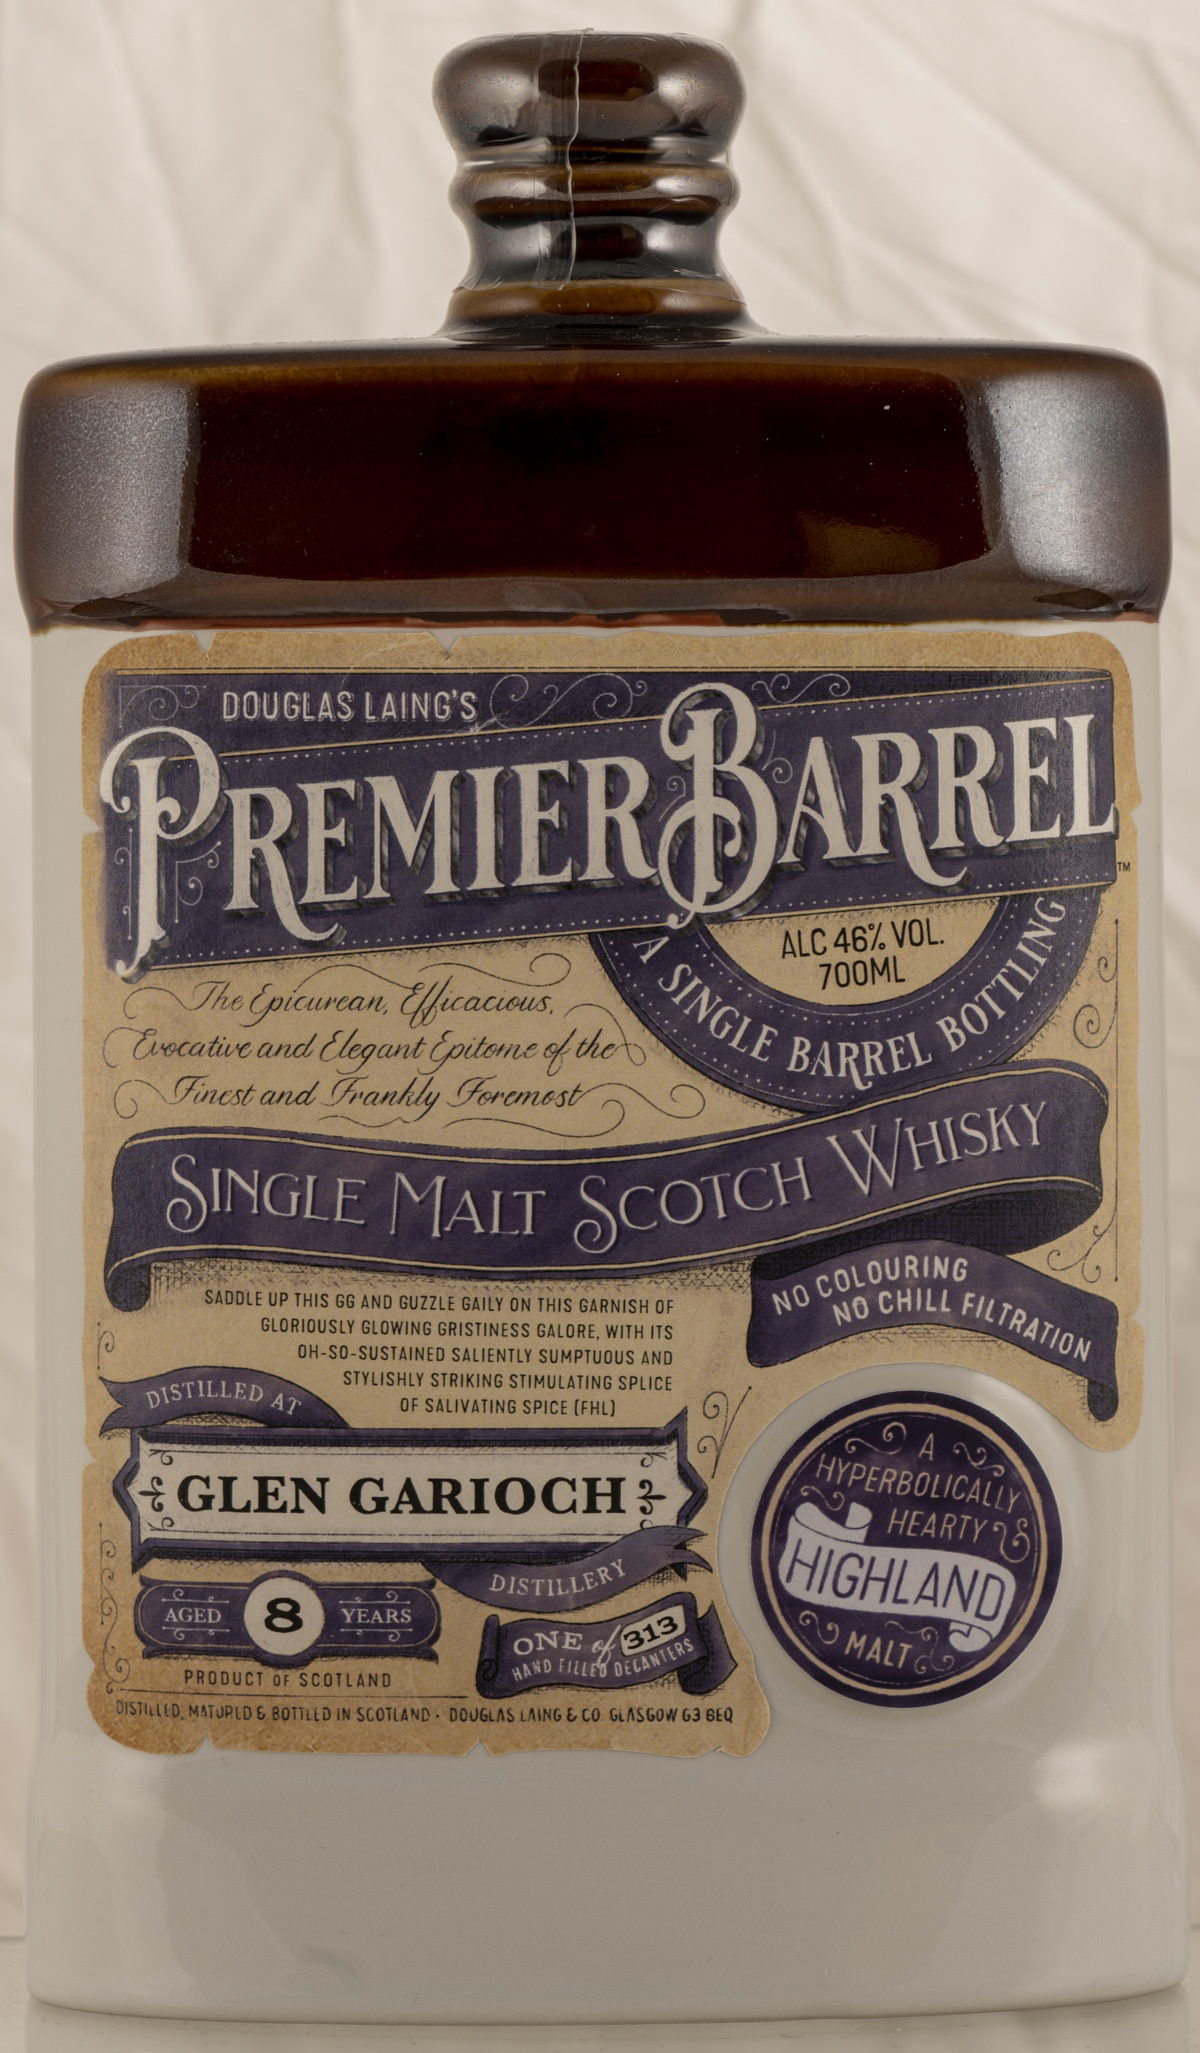 Billede: PHC_4019 - Douglas Laing Premier Barrel Glen Garioch 8 - bottle front.jpg